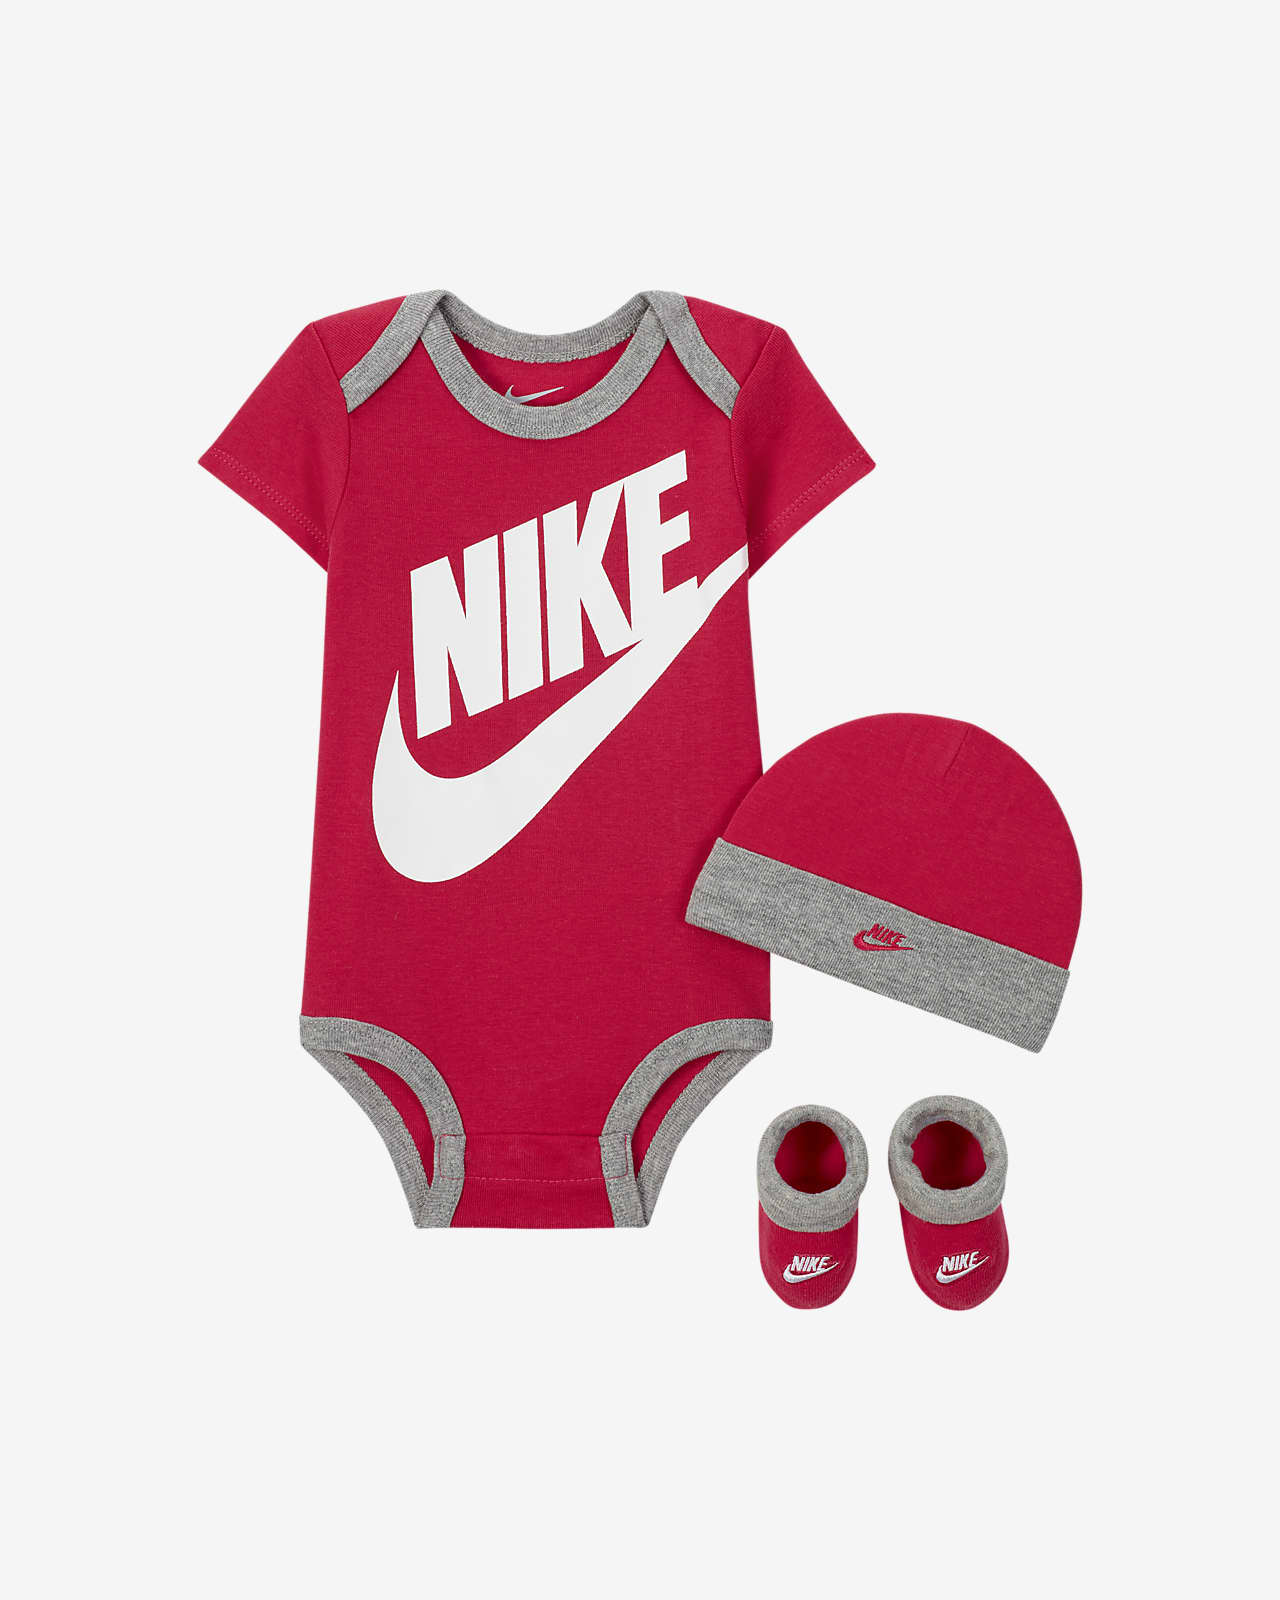 Nike háromrészes szett babáknak (0-6 hónapos)